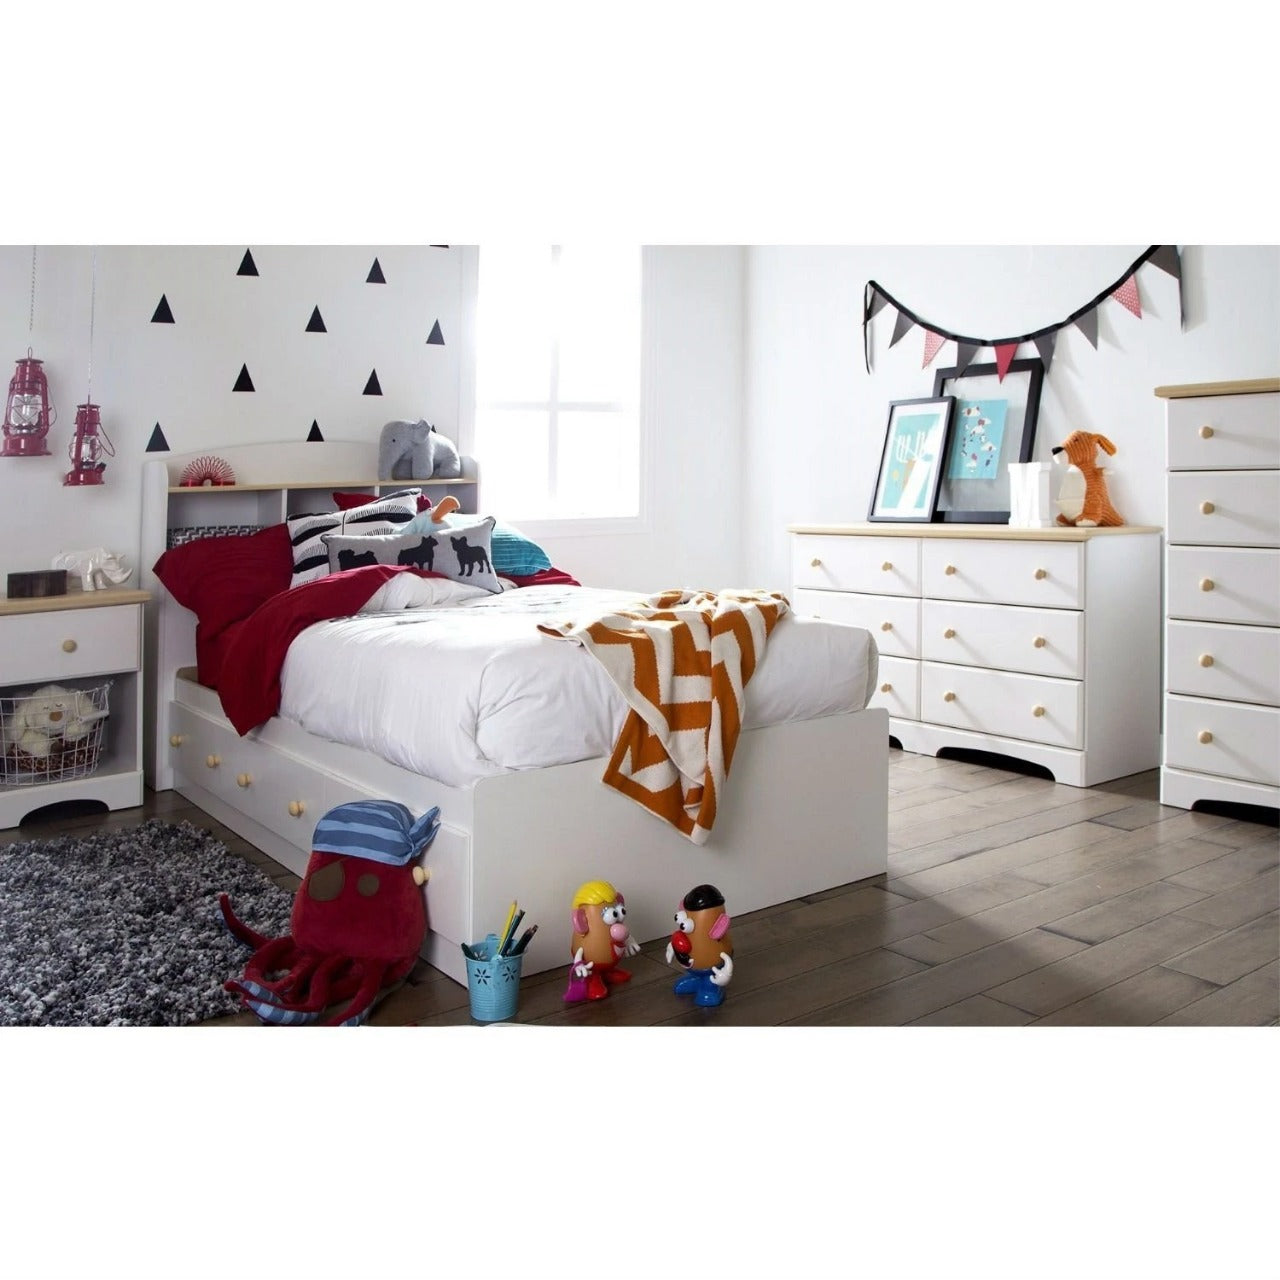 Kids Bedroom Sets: Twin Platform Bed Collection